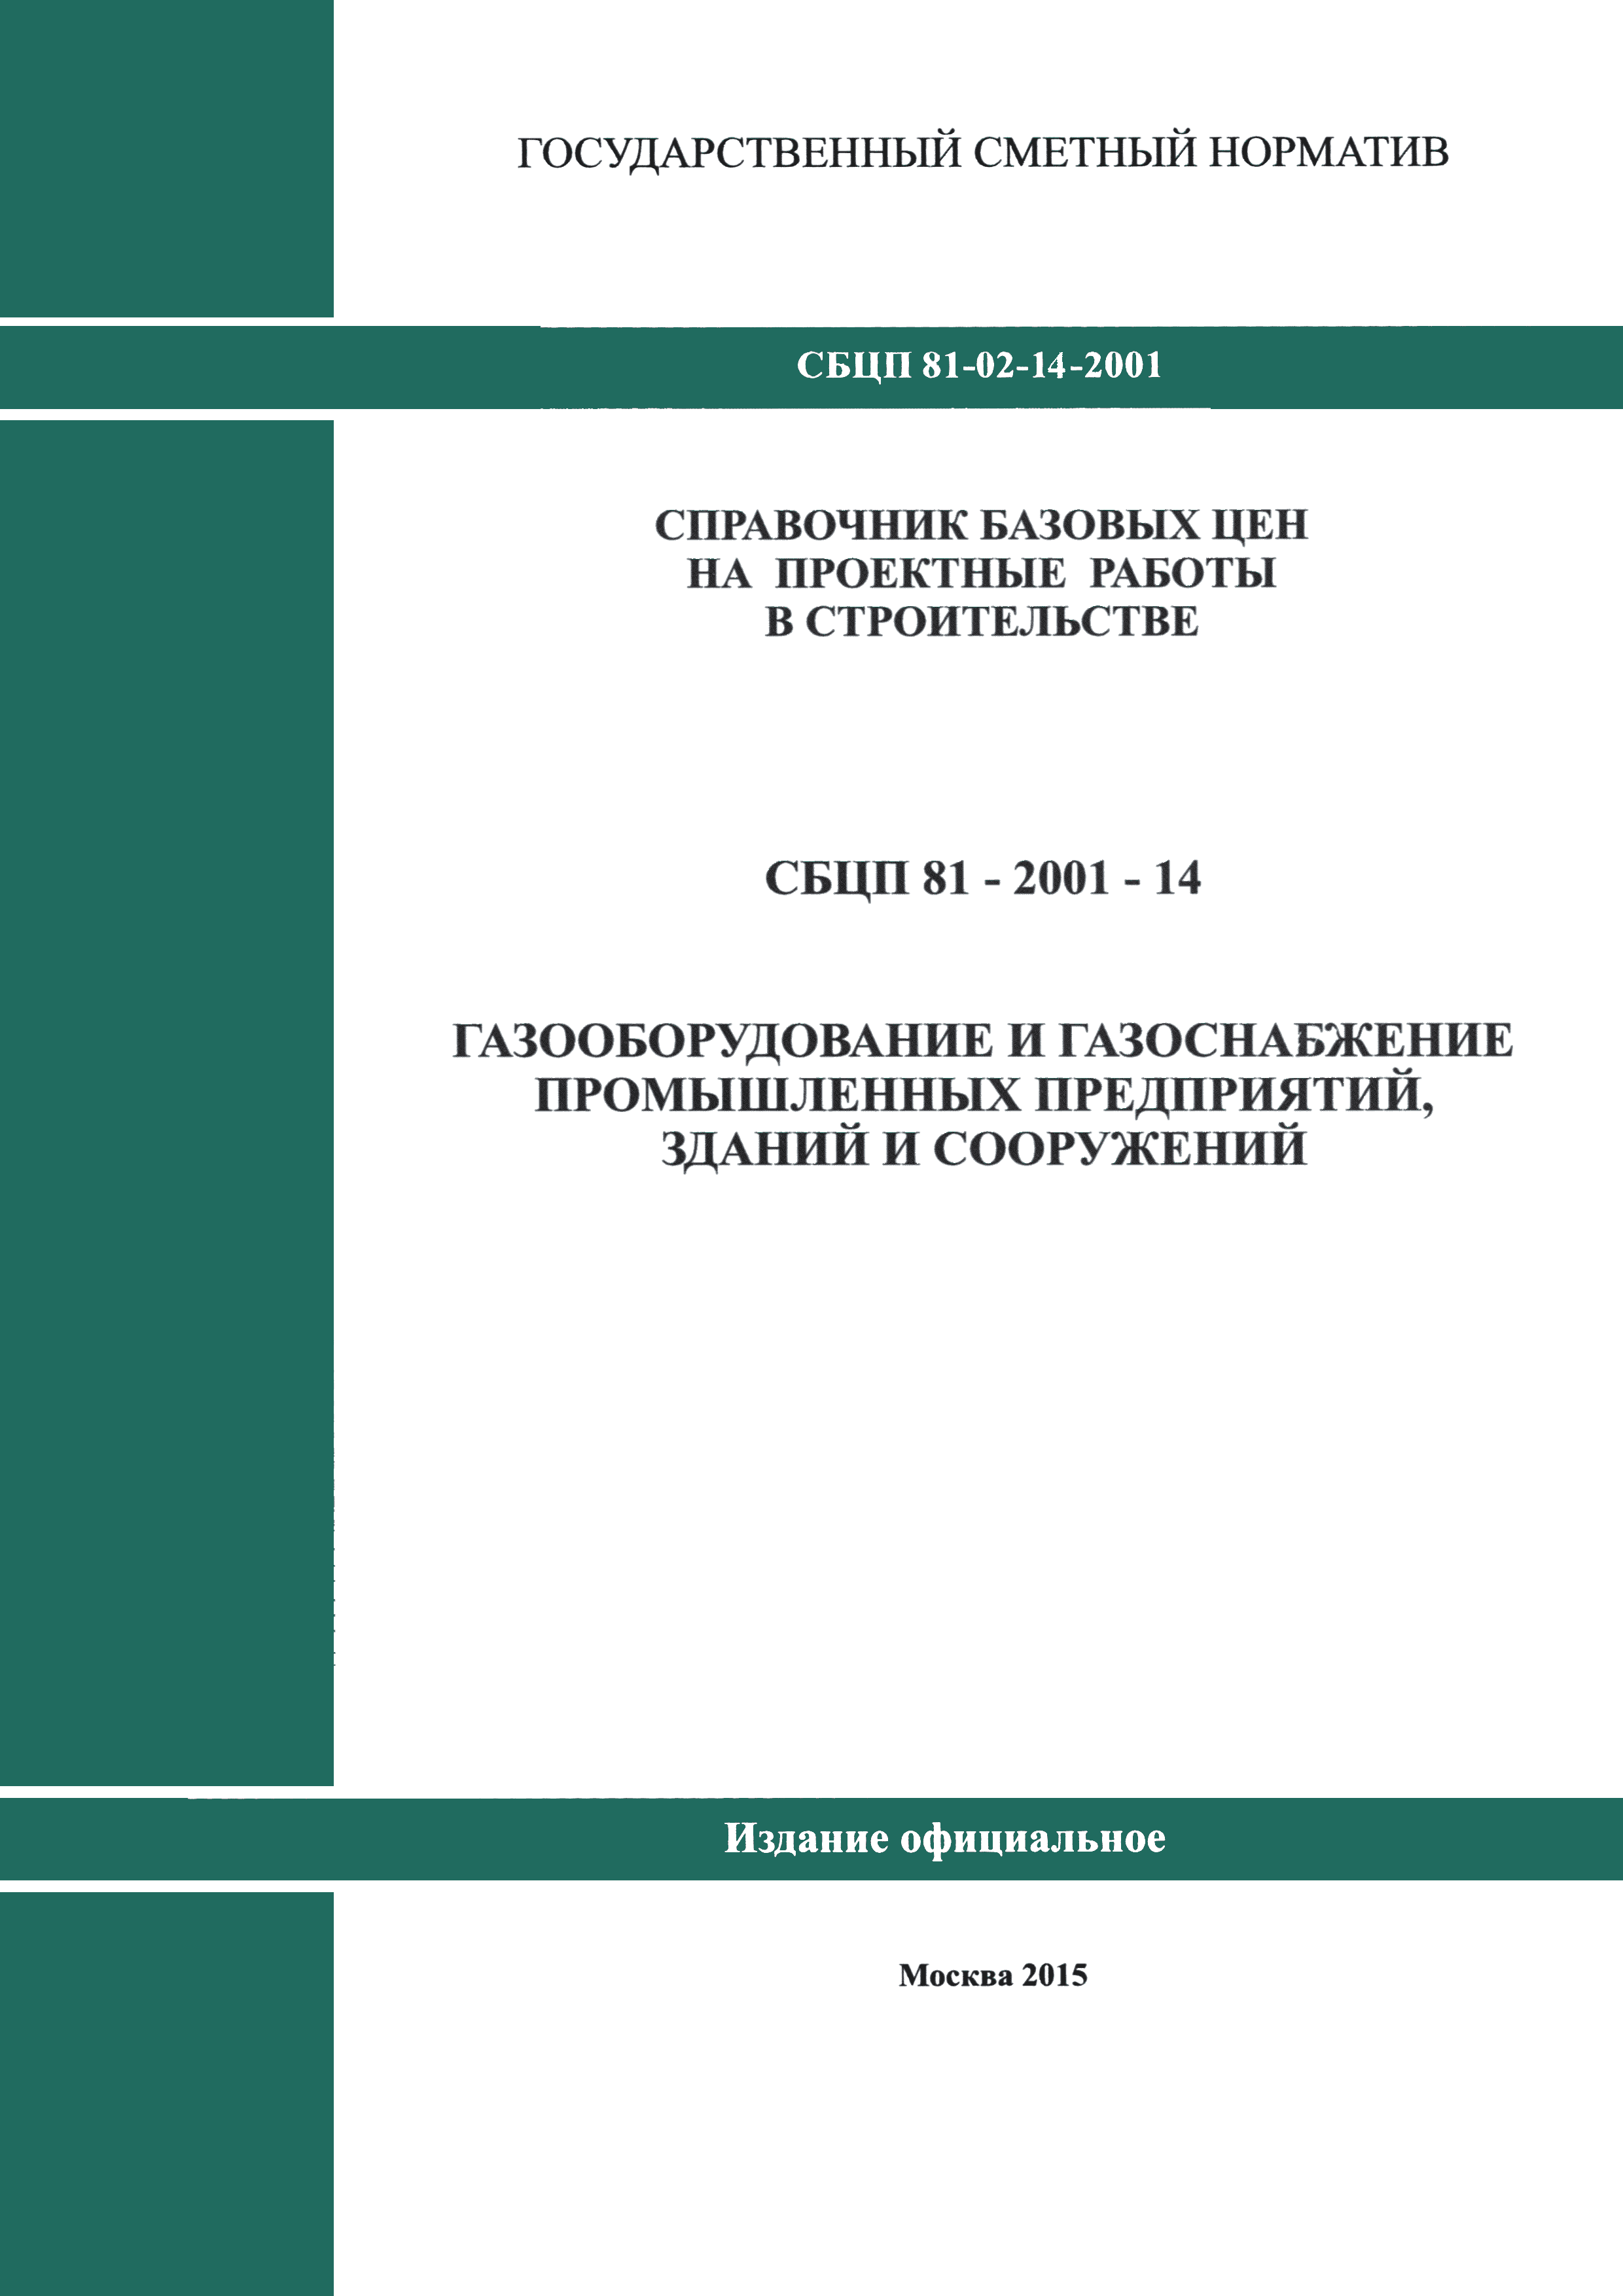 СБЦП 81-2001-14